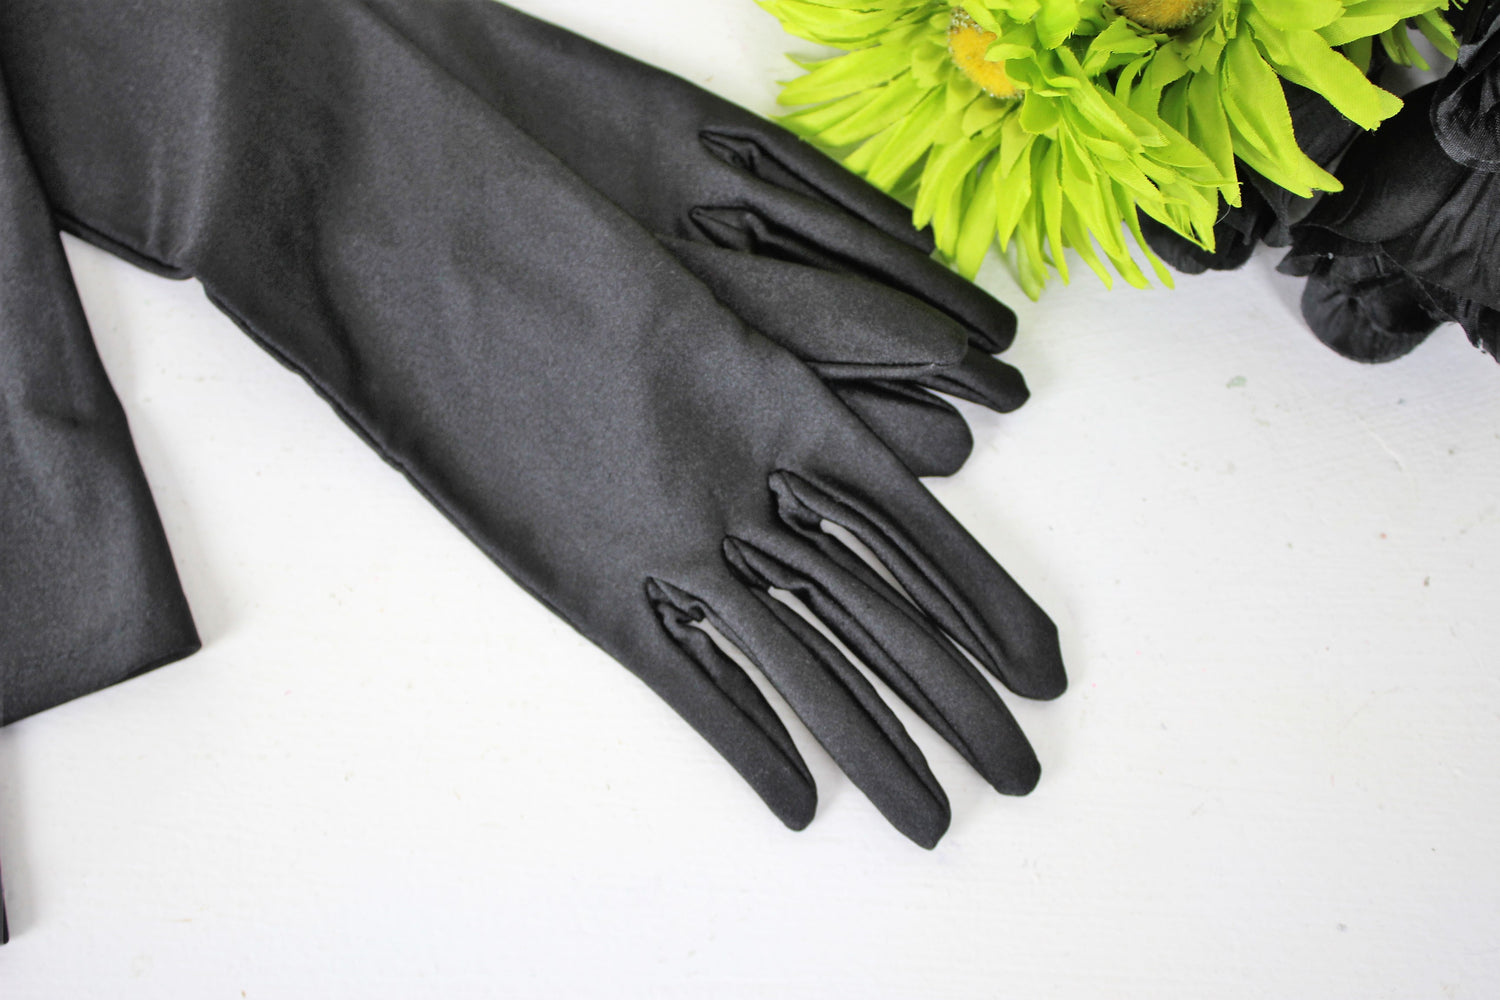 Vintage 1960s Black Satin Gloves by Gant Neyret, Made in France, Size 7